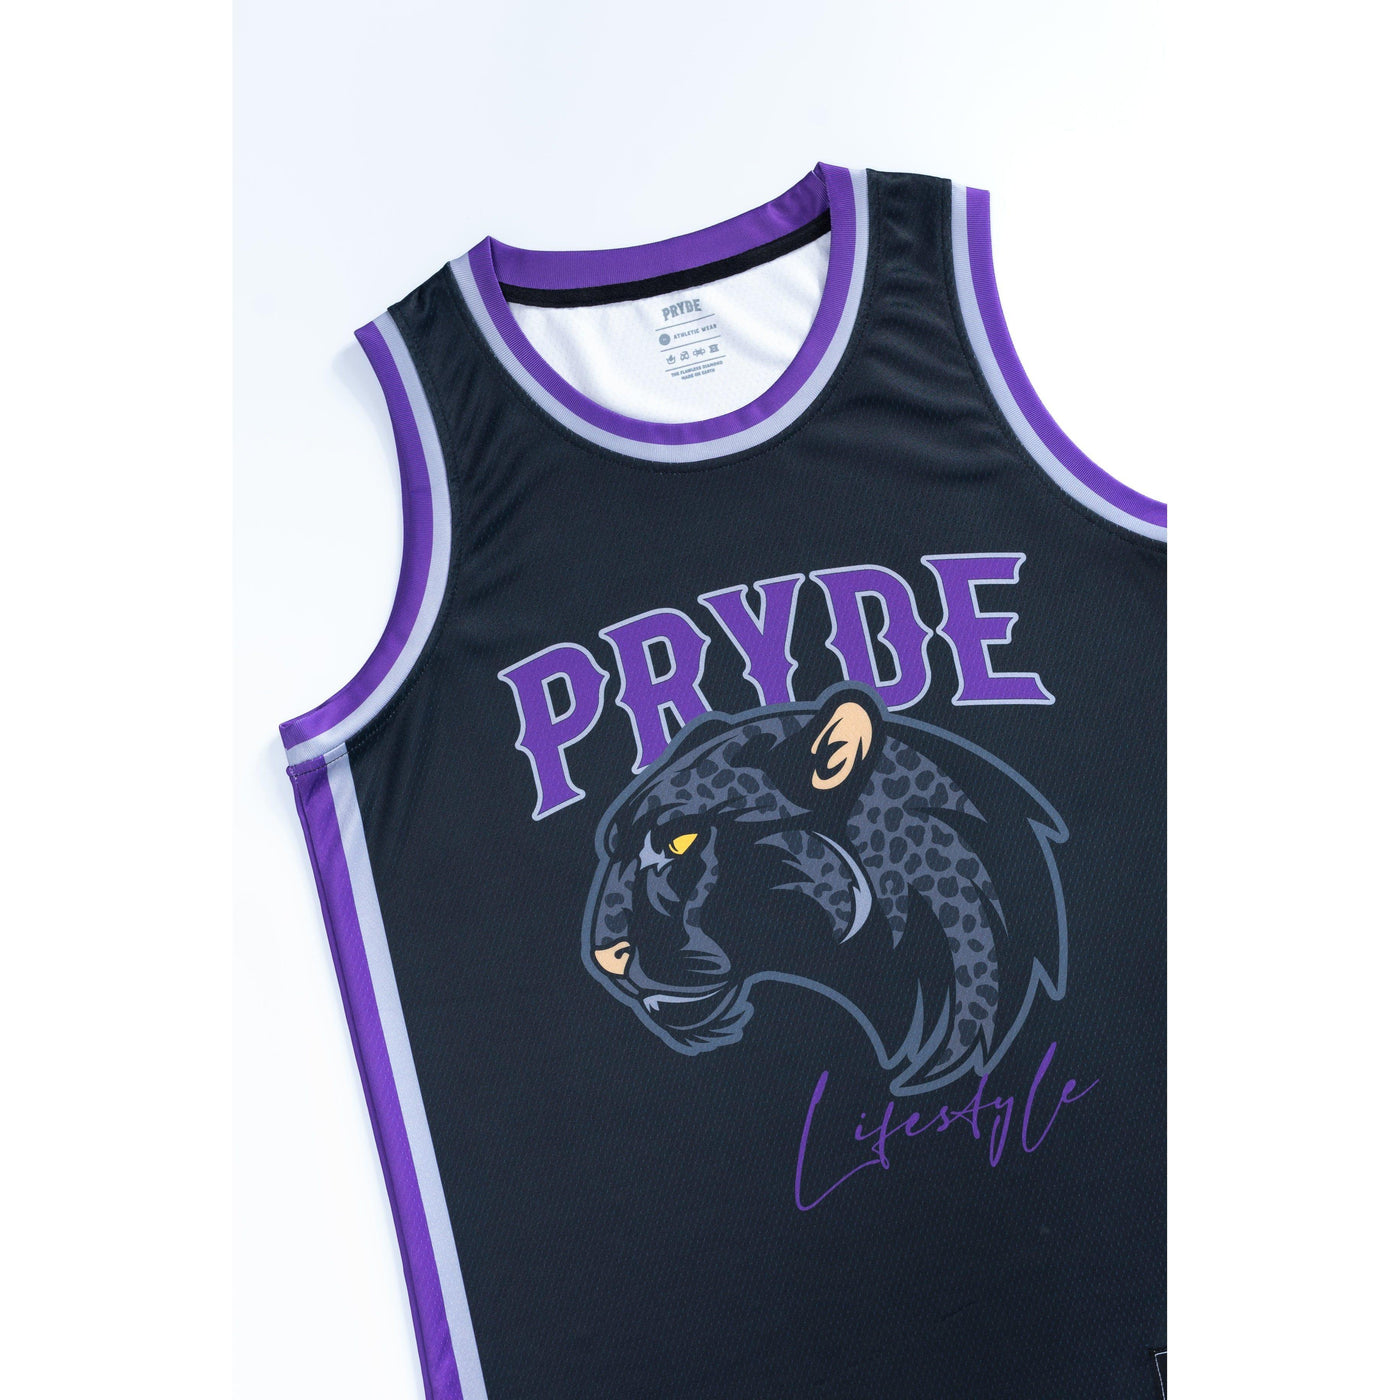 PRYDE Leopard Jersey - Black, Silver & Purple - Muay Thailand